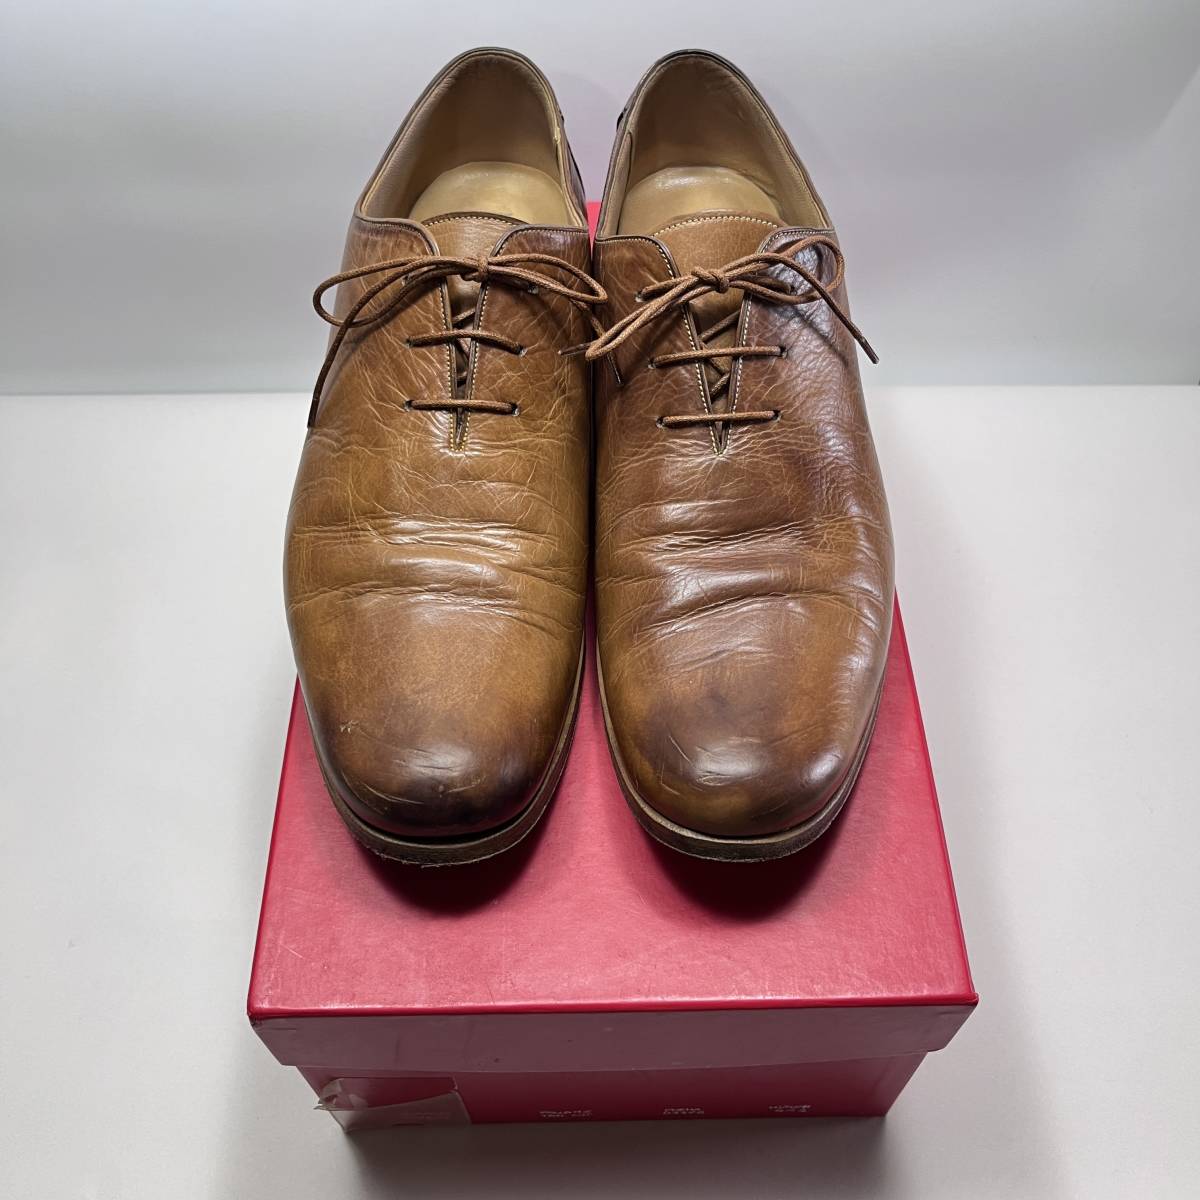 激安本物 Silvano MADEINMARCHE Lattanzi 26cm位 41.5 ドレスシューズ イタリア製 革靴 シルバノラッタンジ メイドインマルケ 靴